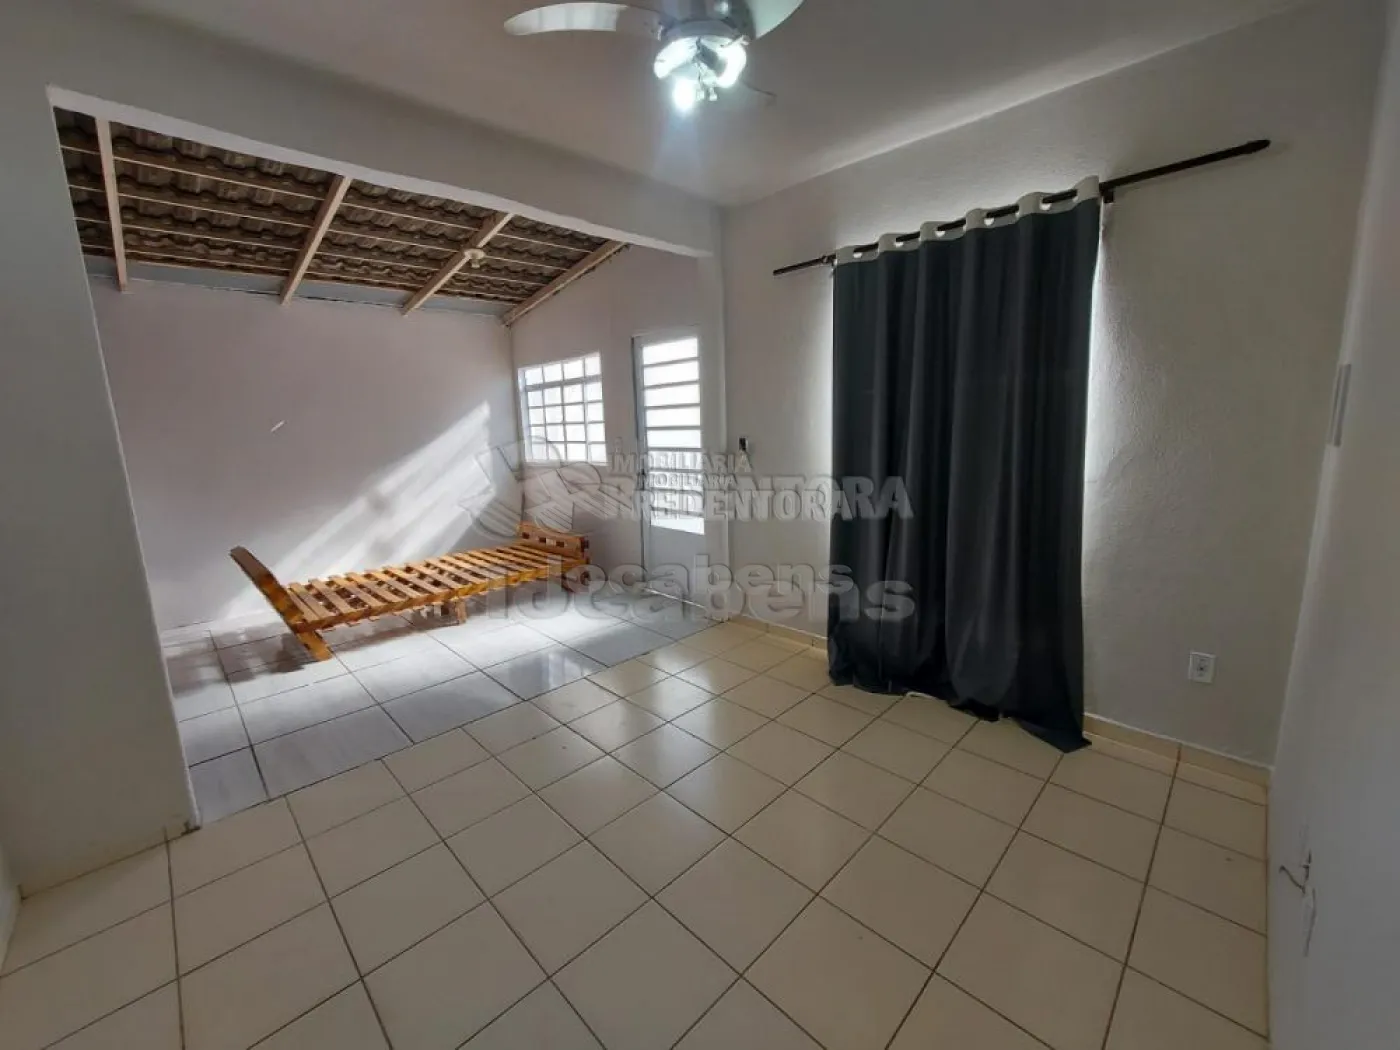 Comprar Casa / Padrão em São José do Rio Preto R$ 265.000,00 - Foto 4